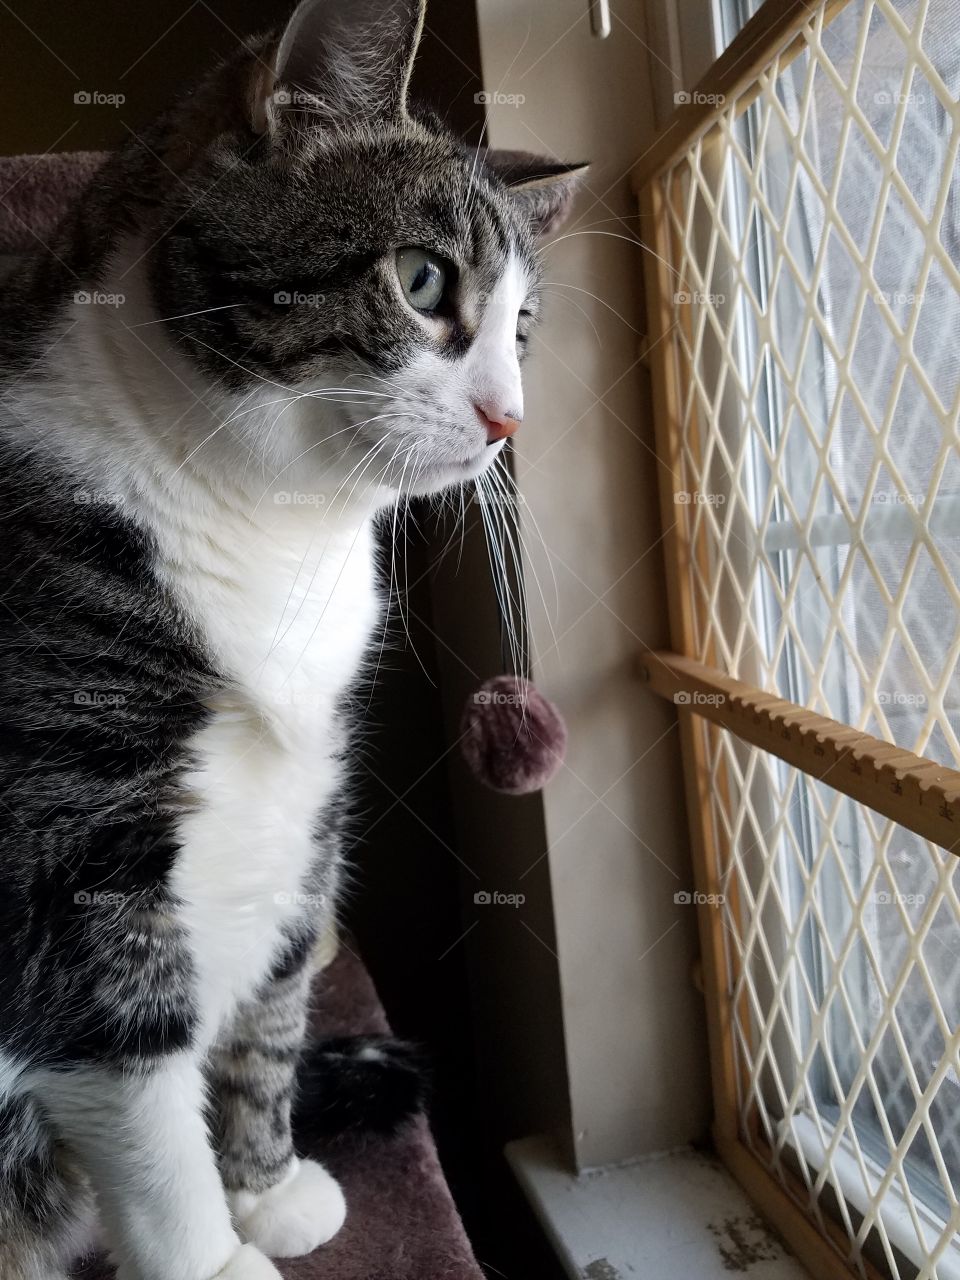 tuxedo cat in window